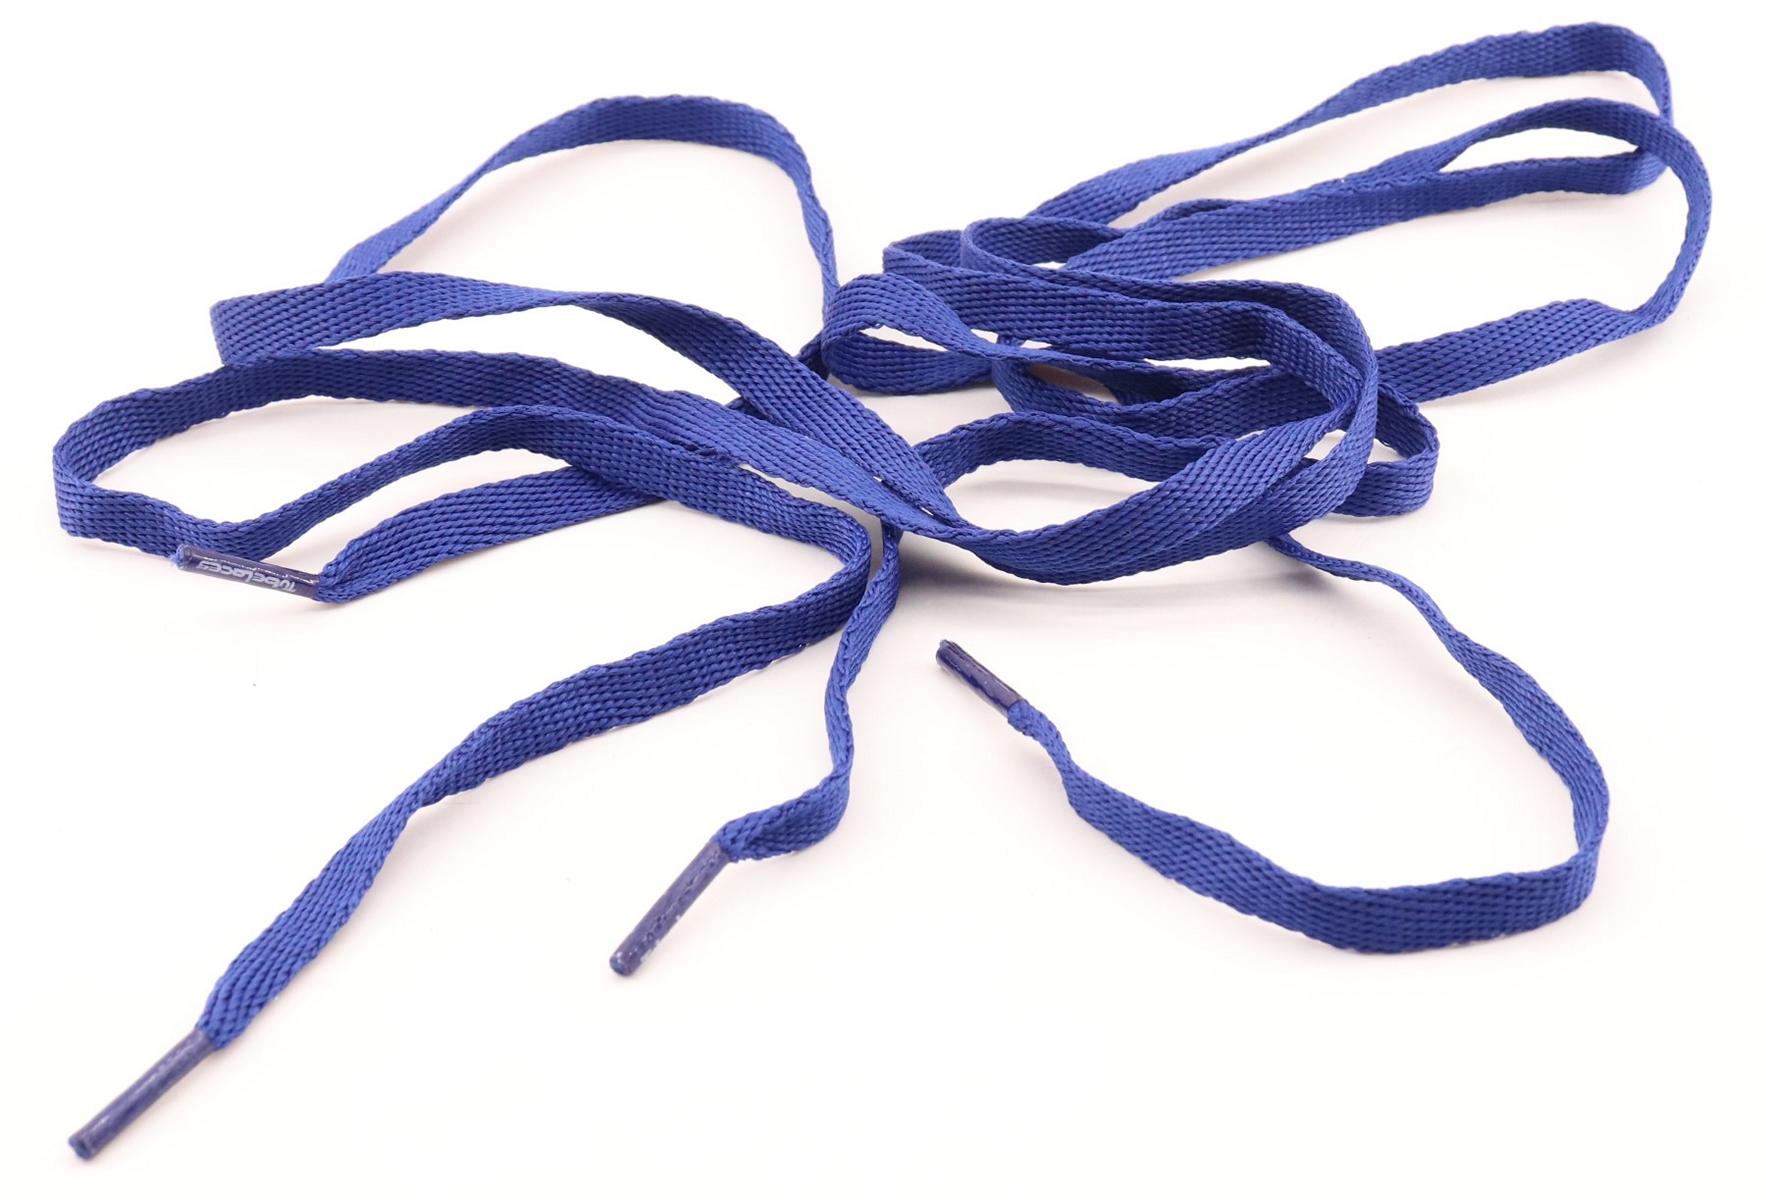 Tubelaces Shoelaces Royal Blue